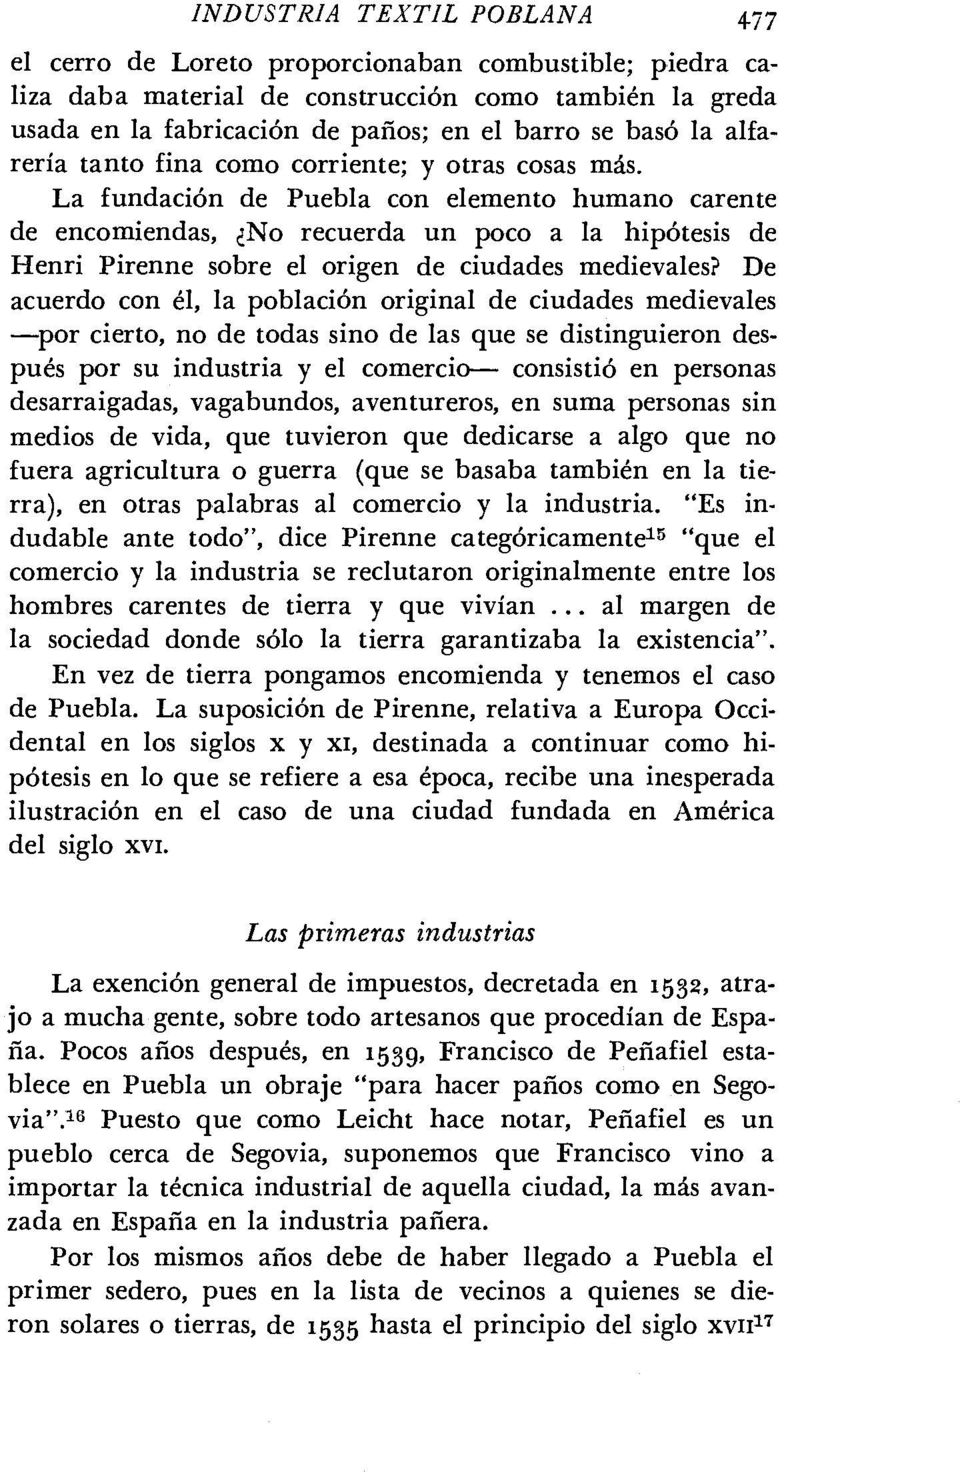 La fundación de Puebla con elemento humano carente de encomiendas, No recuerda un poco a la hipótesis de Henri Pirenne sobre el origen de ciudades medievales?